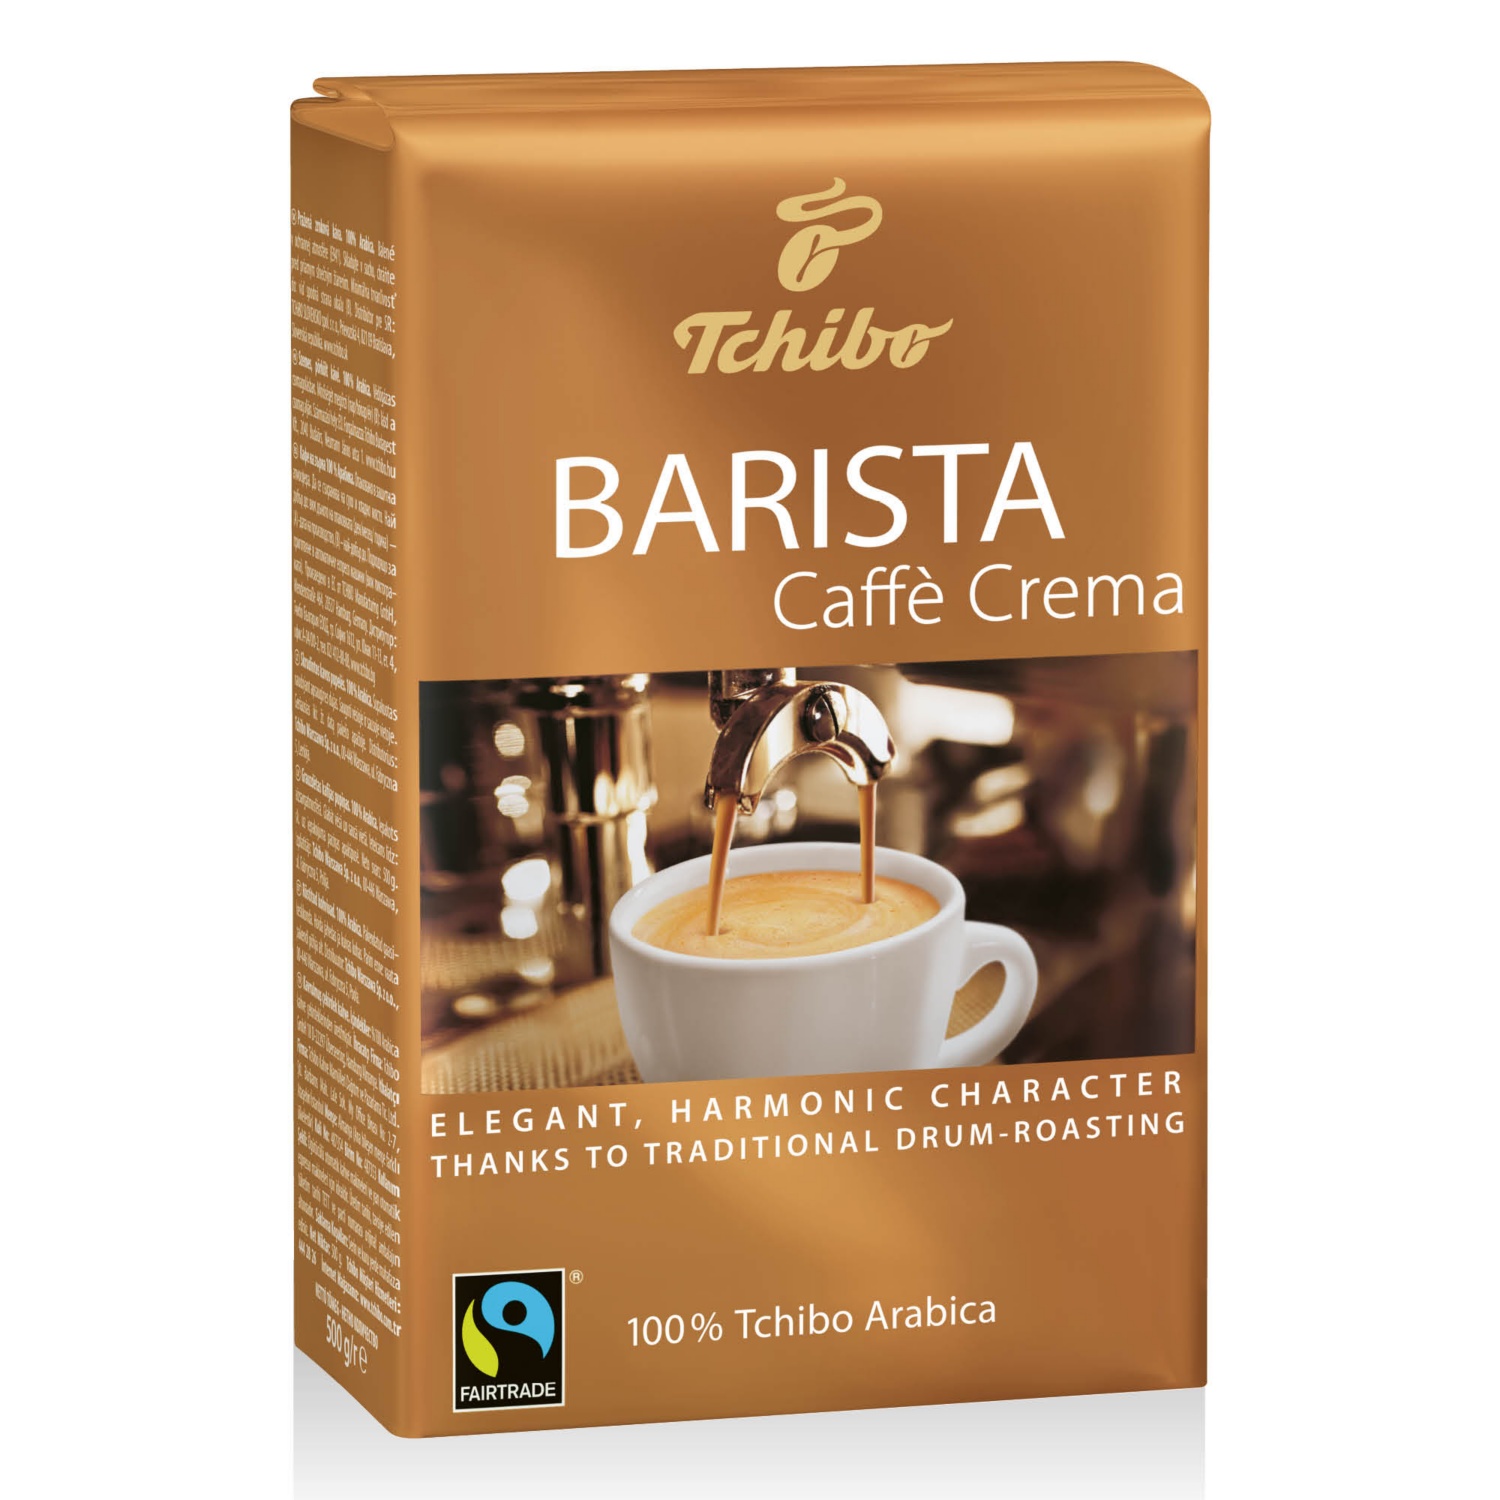 TCHIBO Barista szemes kávé, 500 g, Caffé Crema